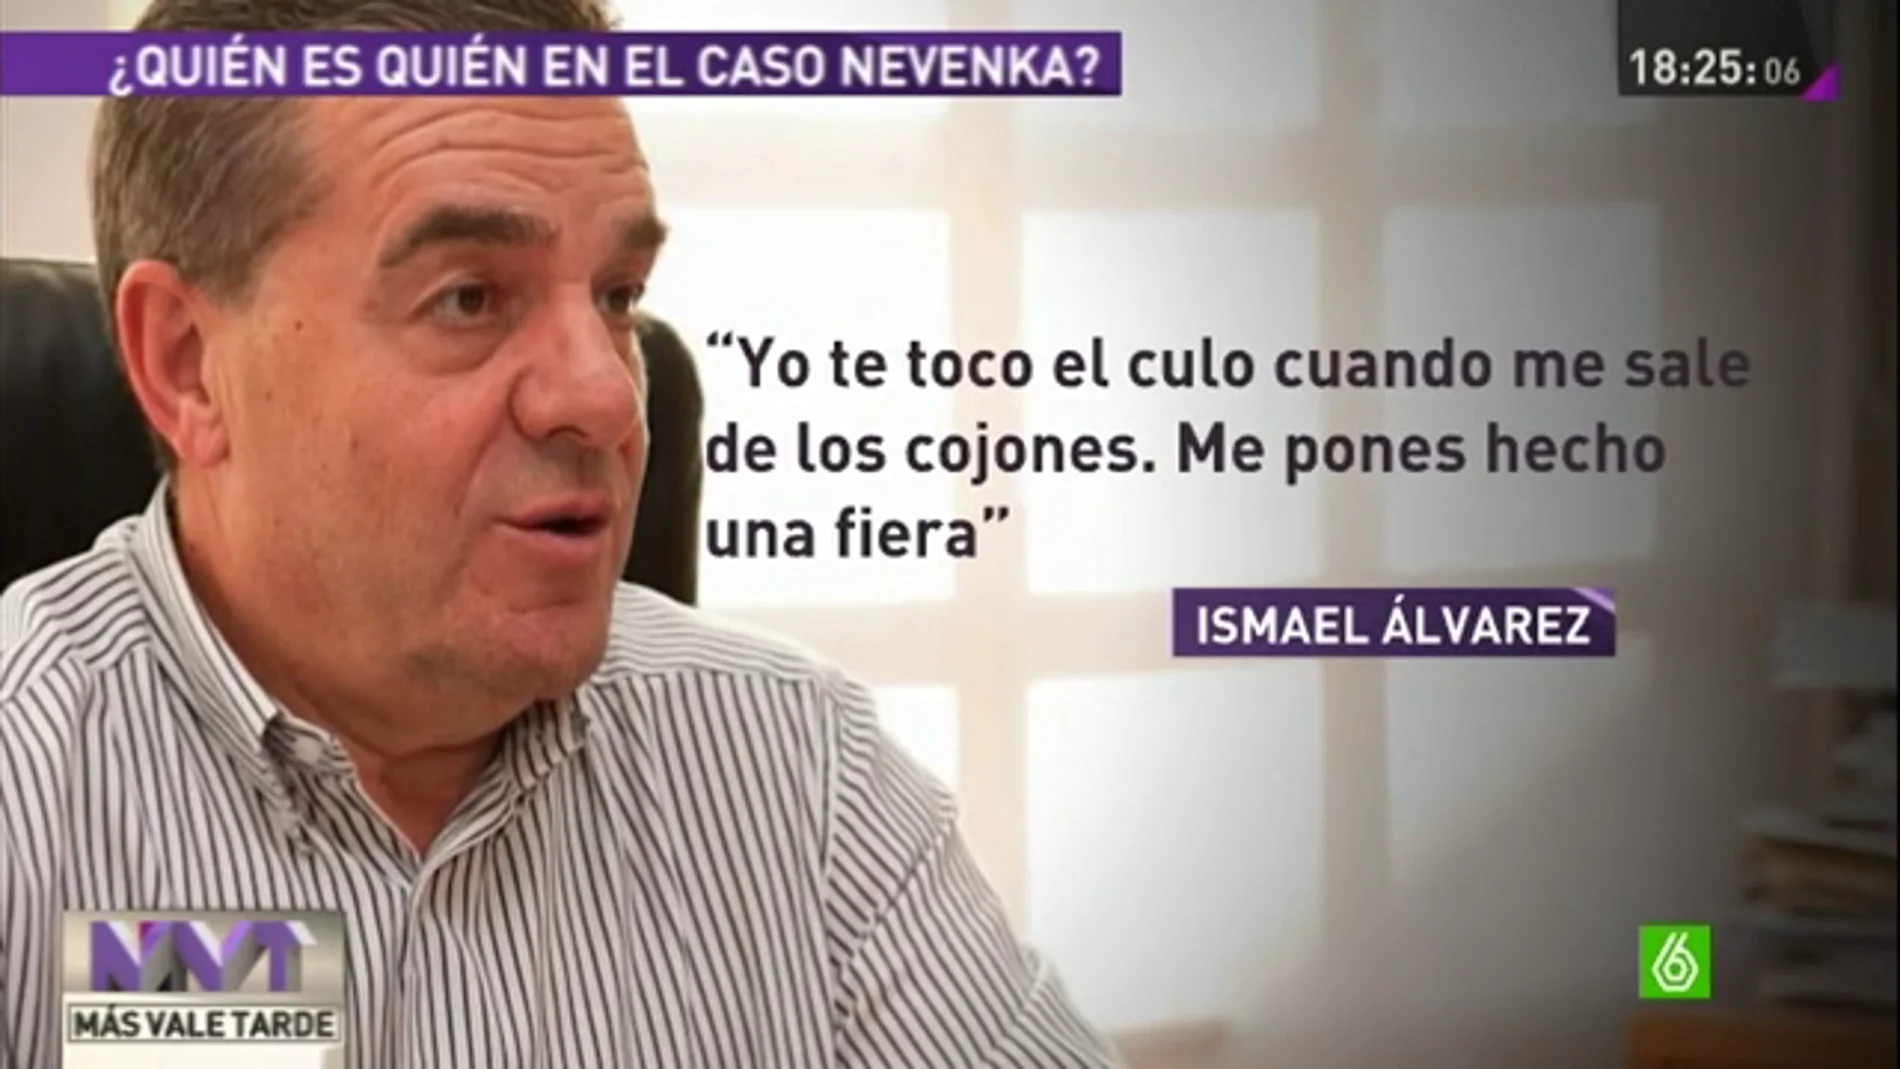 Ismael Álvarez